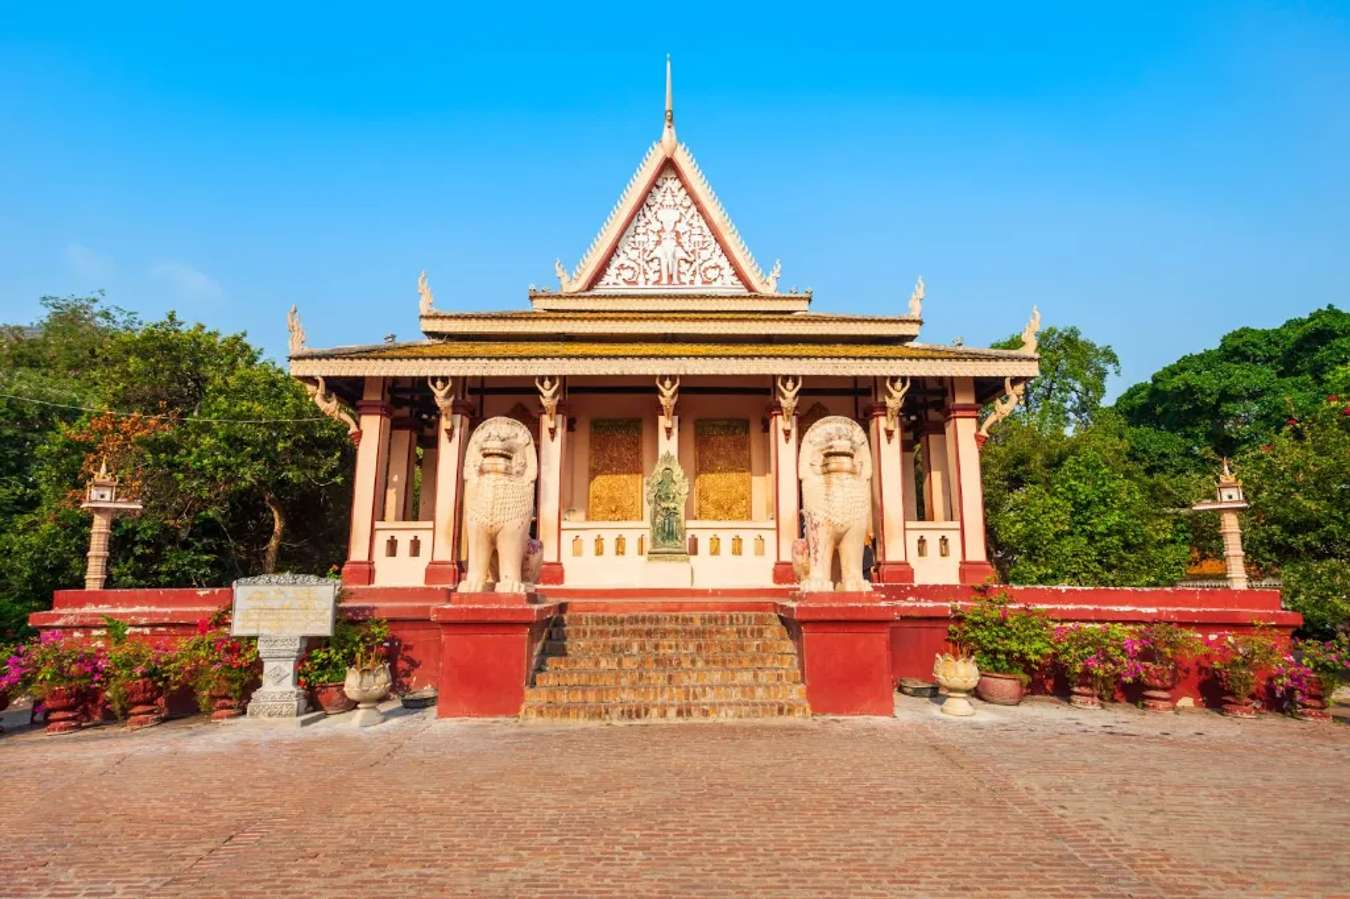 Gợi ý địa điểm du lịch độc đáo tại Phnom Penh, Campuchia